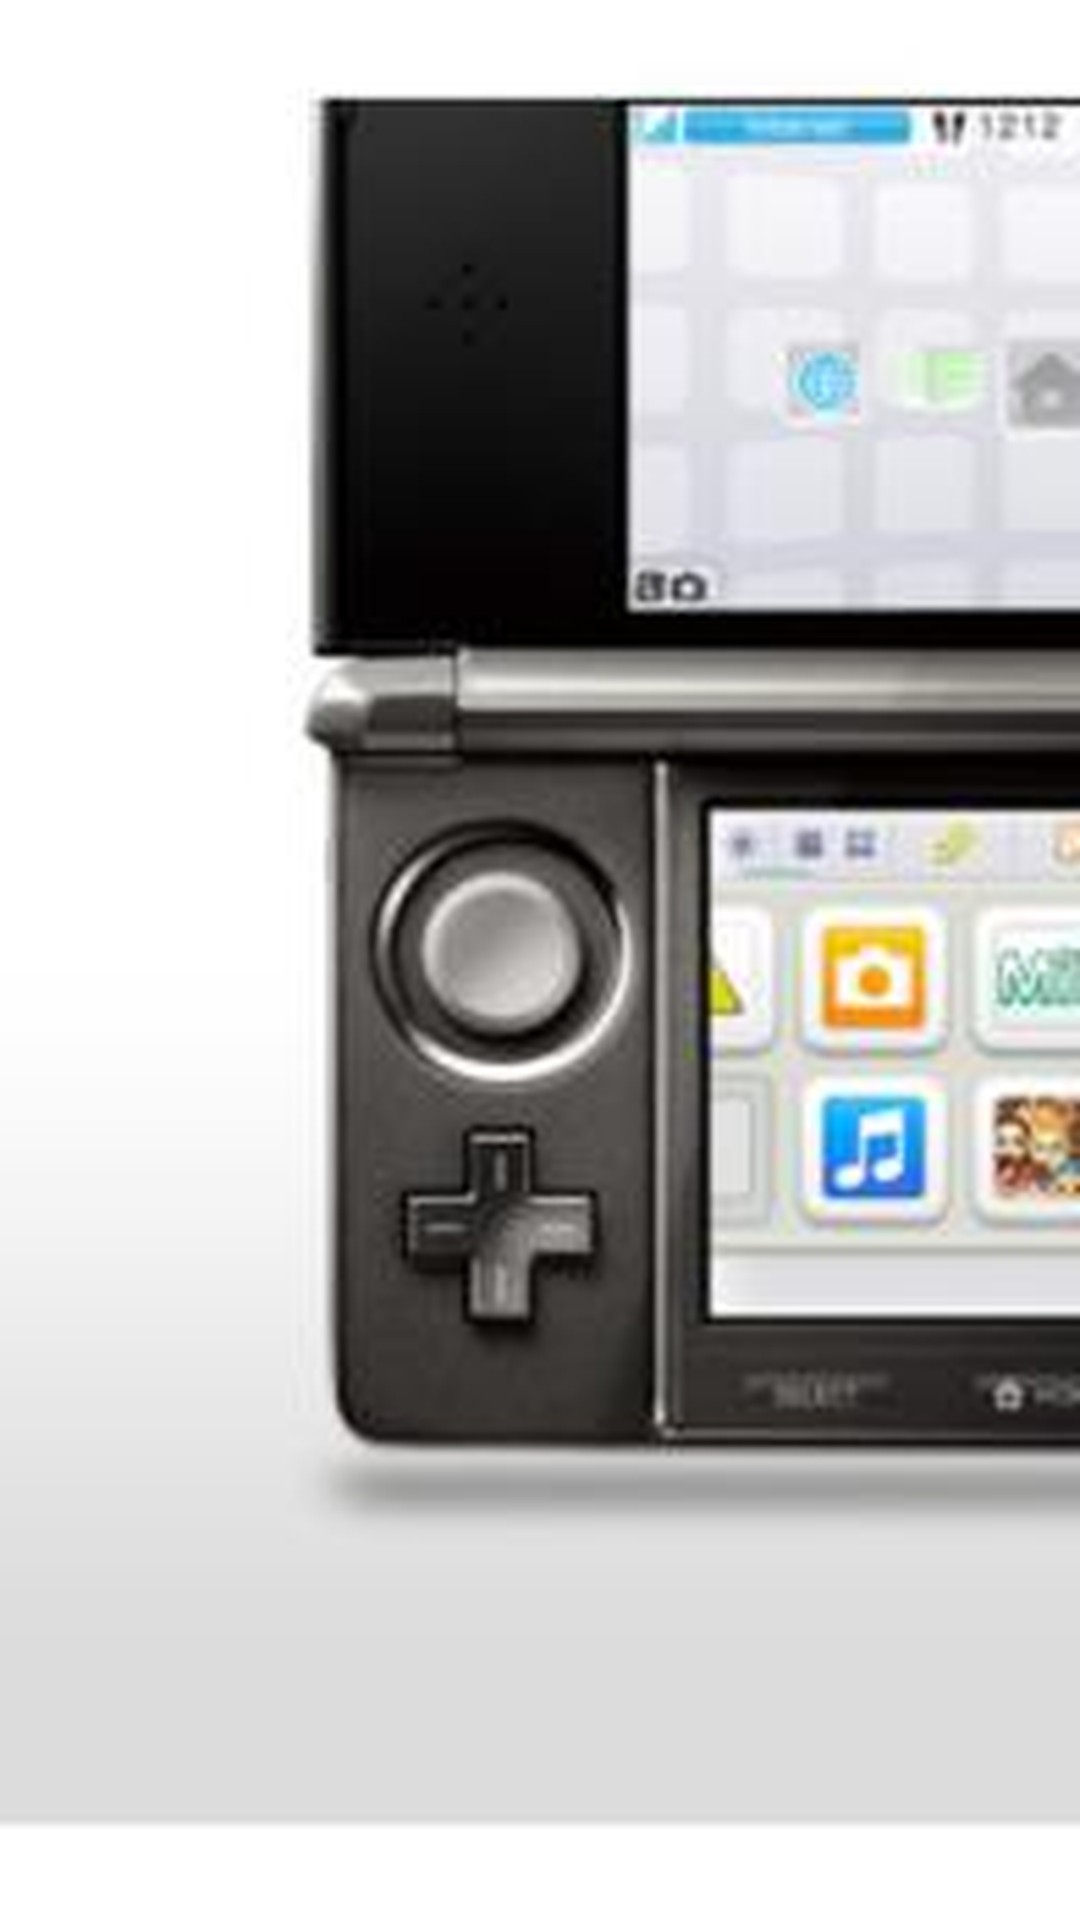 Nintendo 3DS: Os 15 jogos mais vendidos na eShop japonesa entre